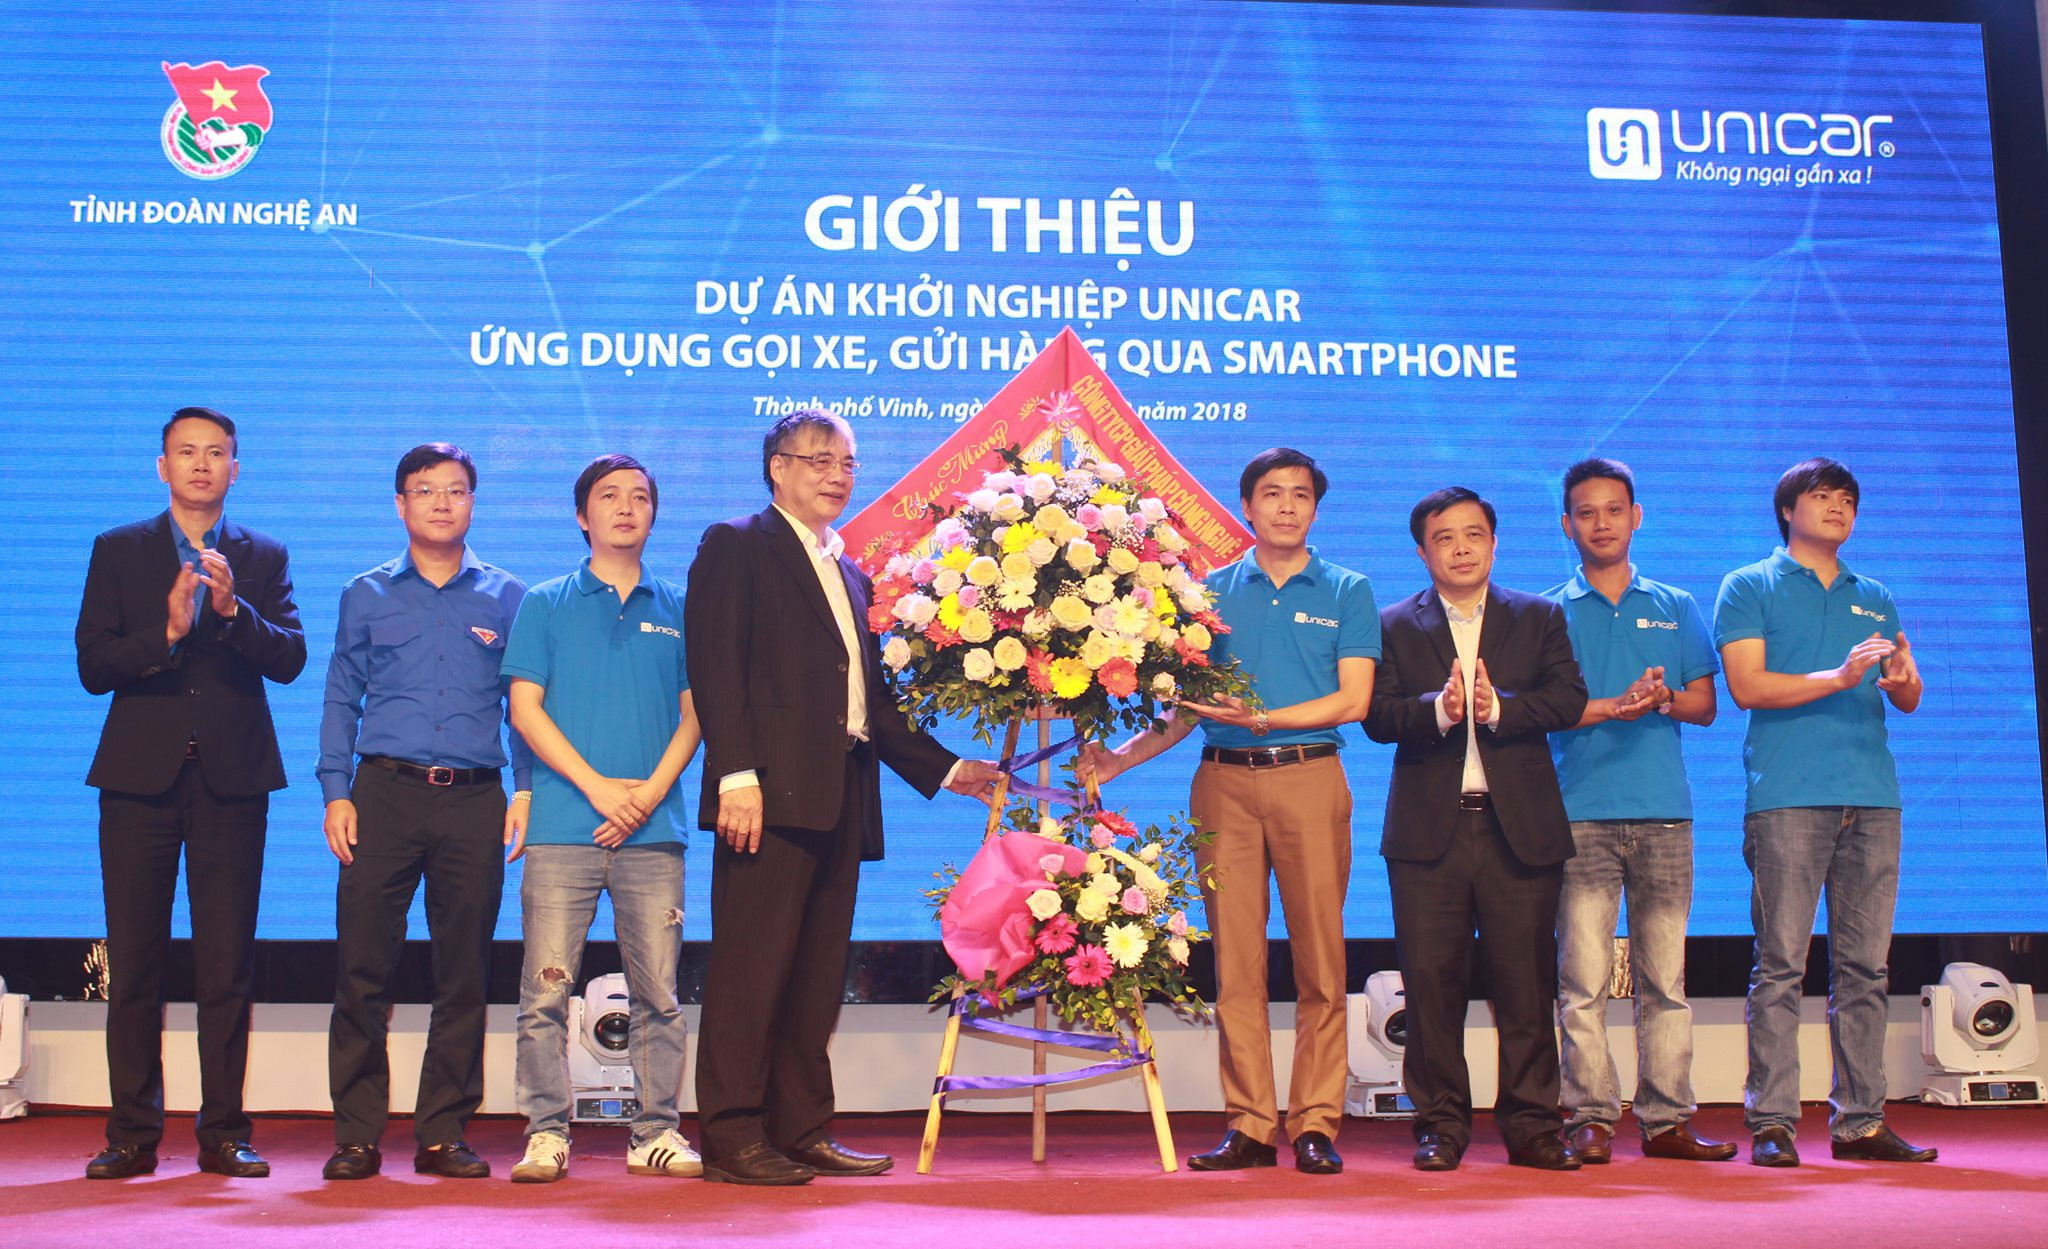 Lãnh đạo tỉnh Nghệ An tặng hoa chúc mừng dự án khởi nghiệp Unicar. Ảnh: Phương Thúy